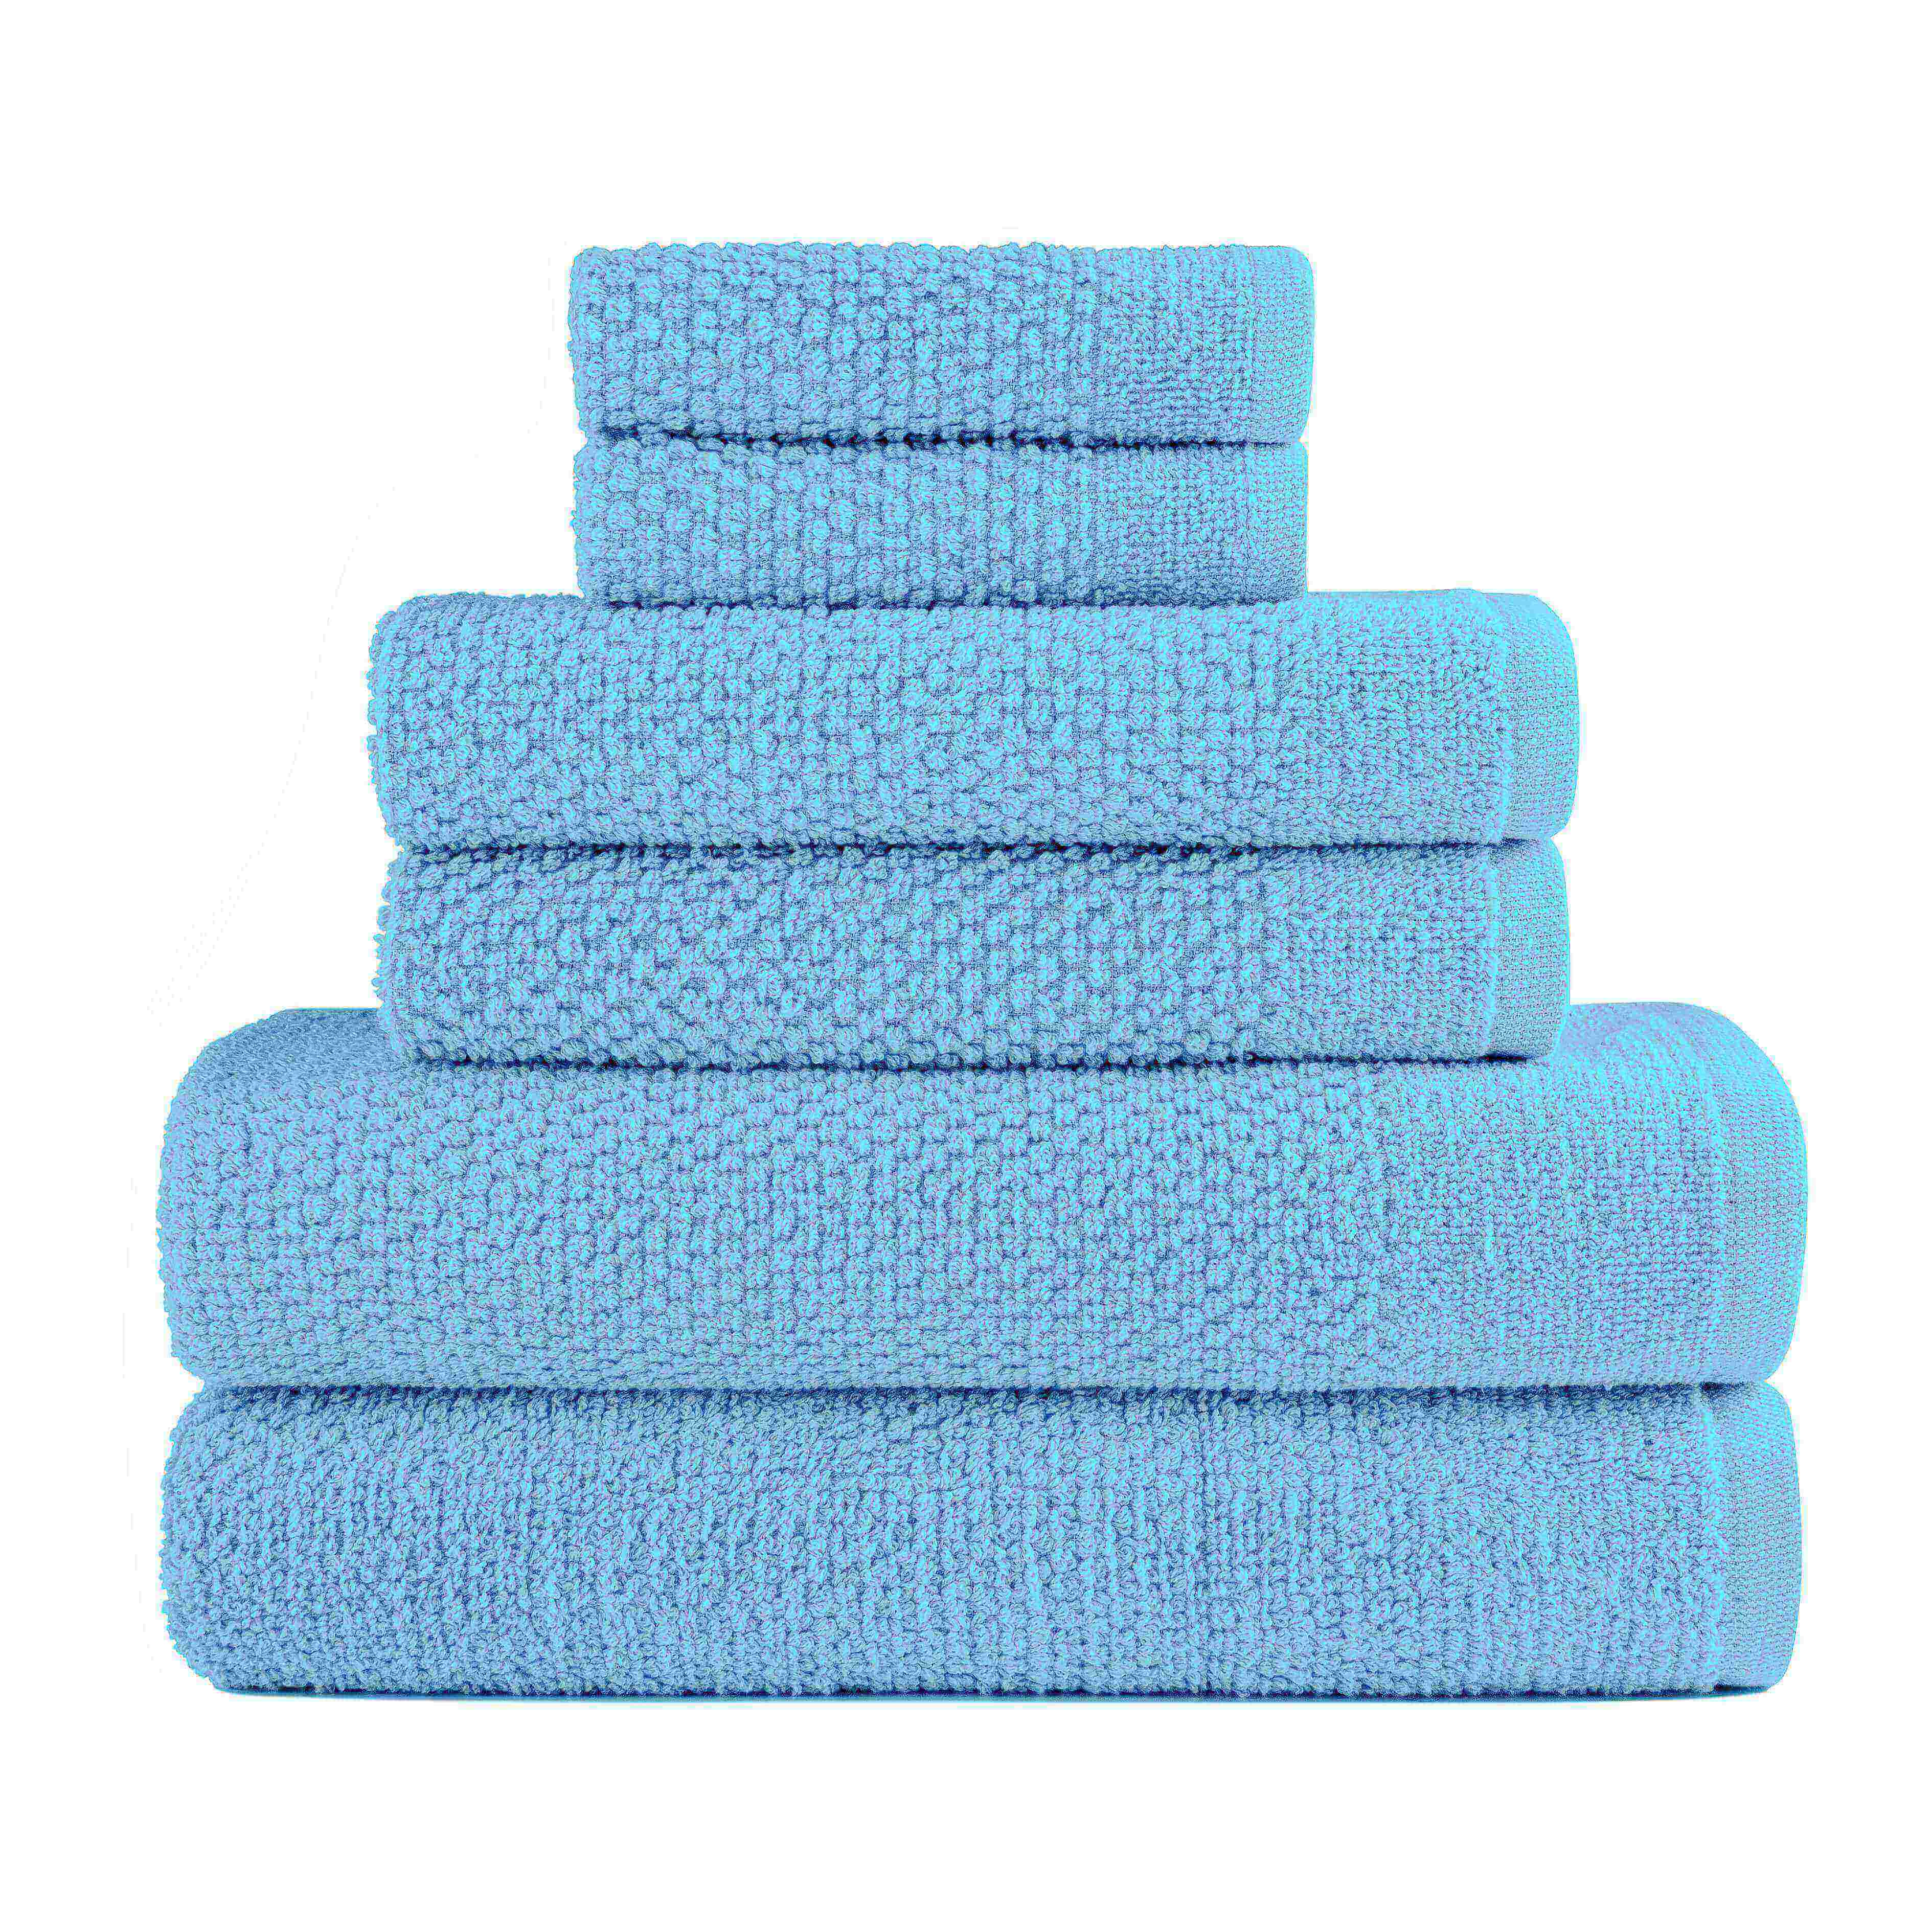 Aqua Colour of Dan River 6 Piece Popcorn Cotton Bath Towel Set